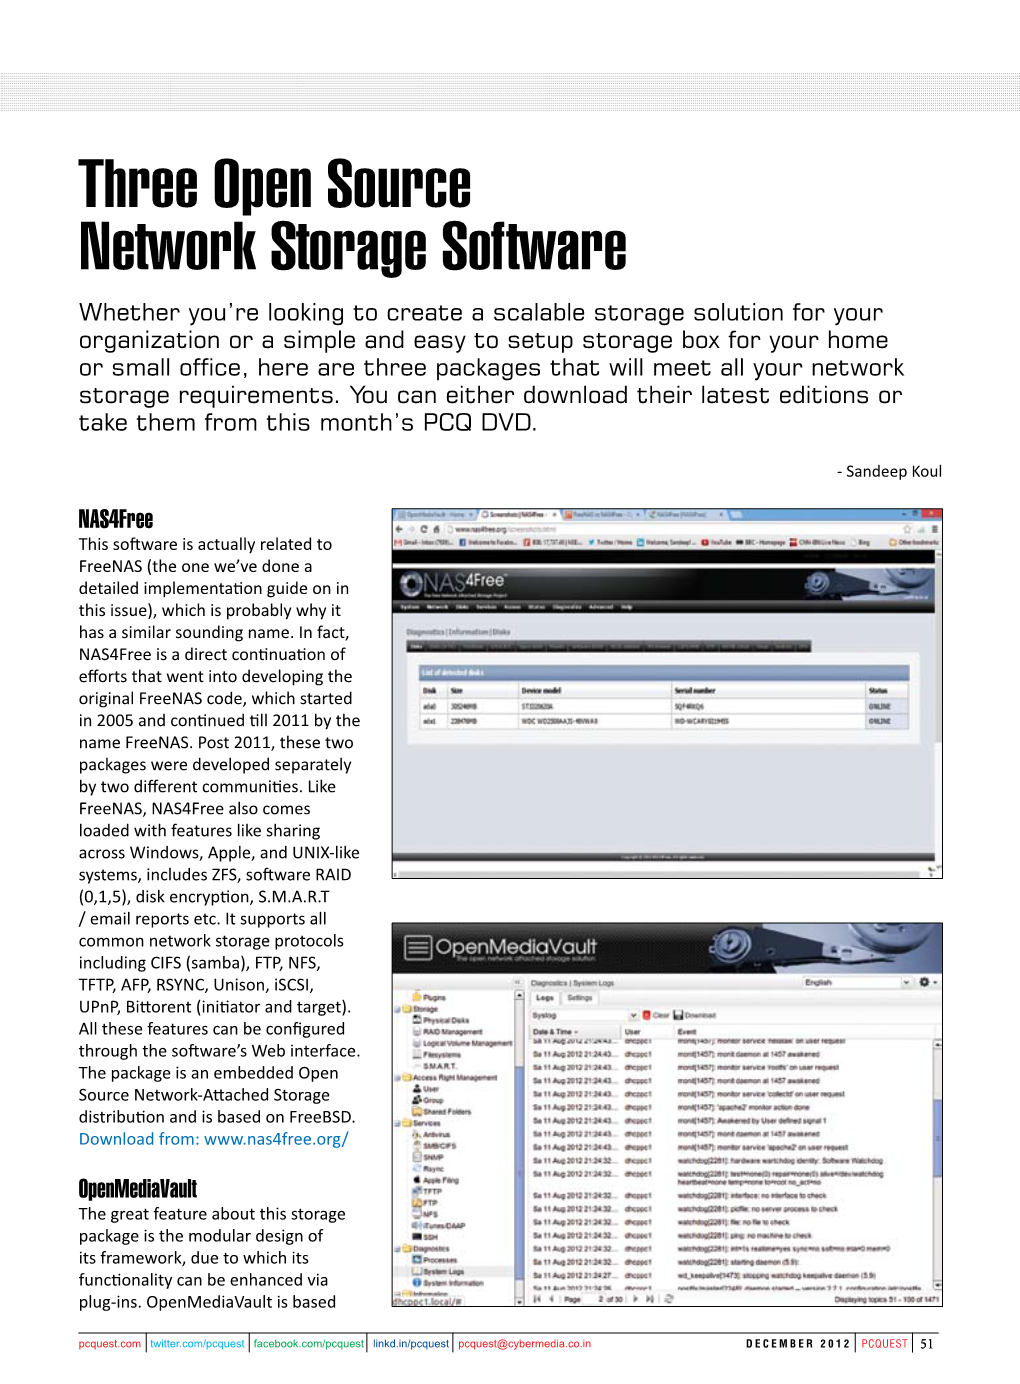 Three Open Source Network Storage Software